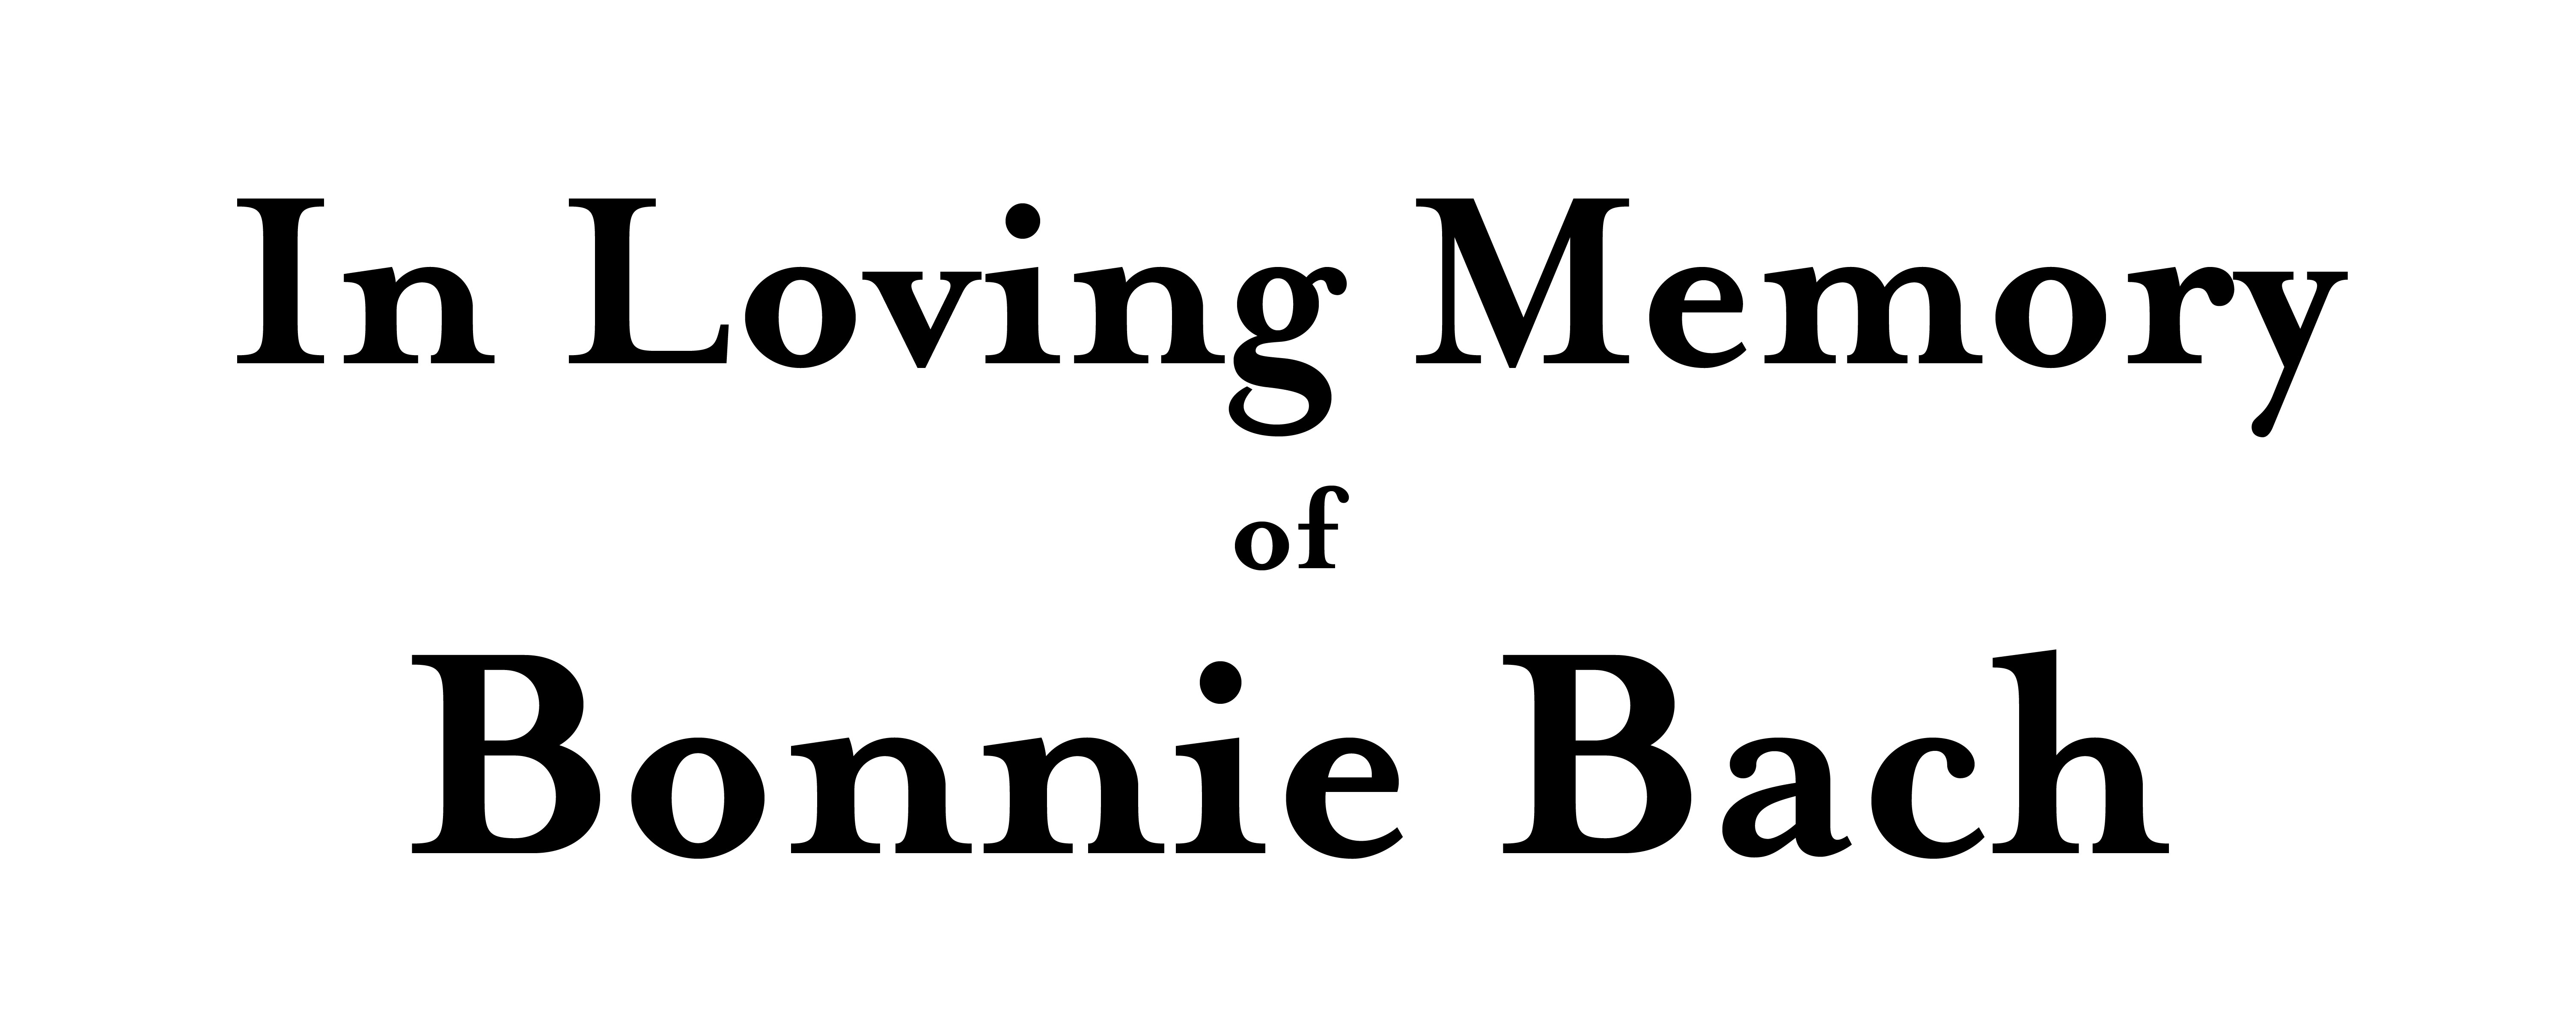 Bonnie Bach Memorial show sponsor